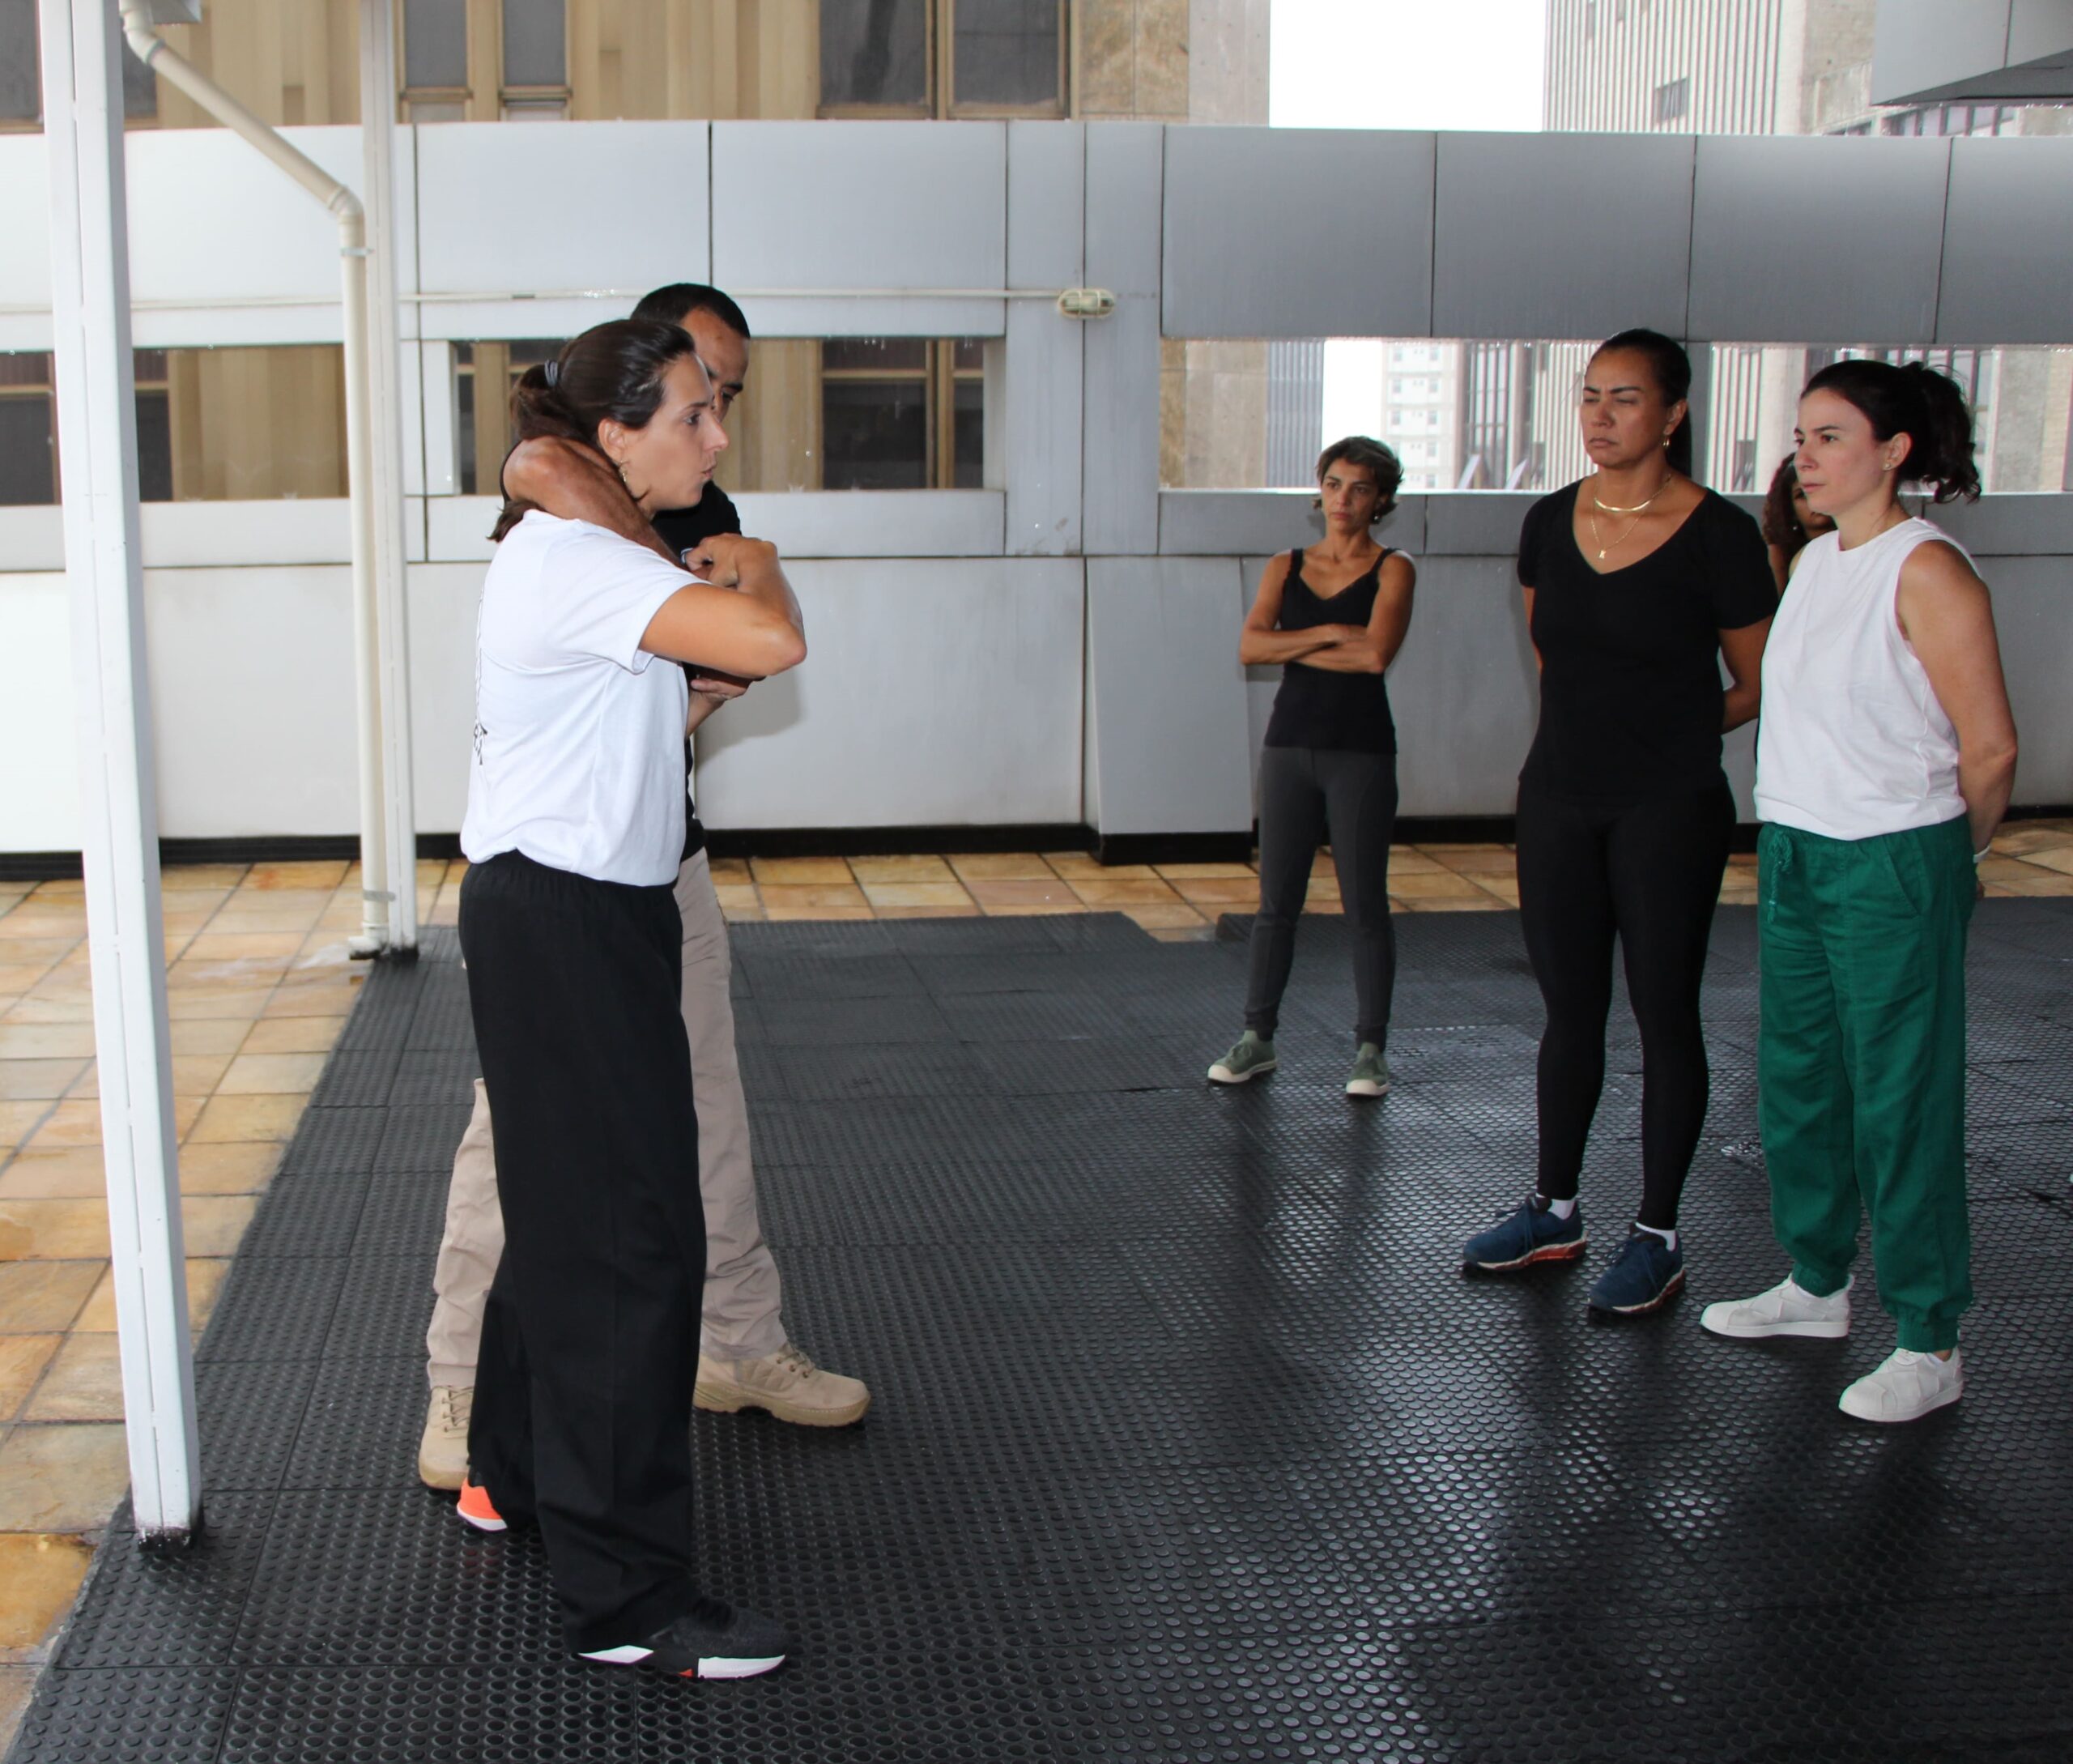 Fotografia colorida da instrutora Fernanda Sampaio ensinando artes marciais para um grupo de mulheres.